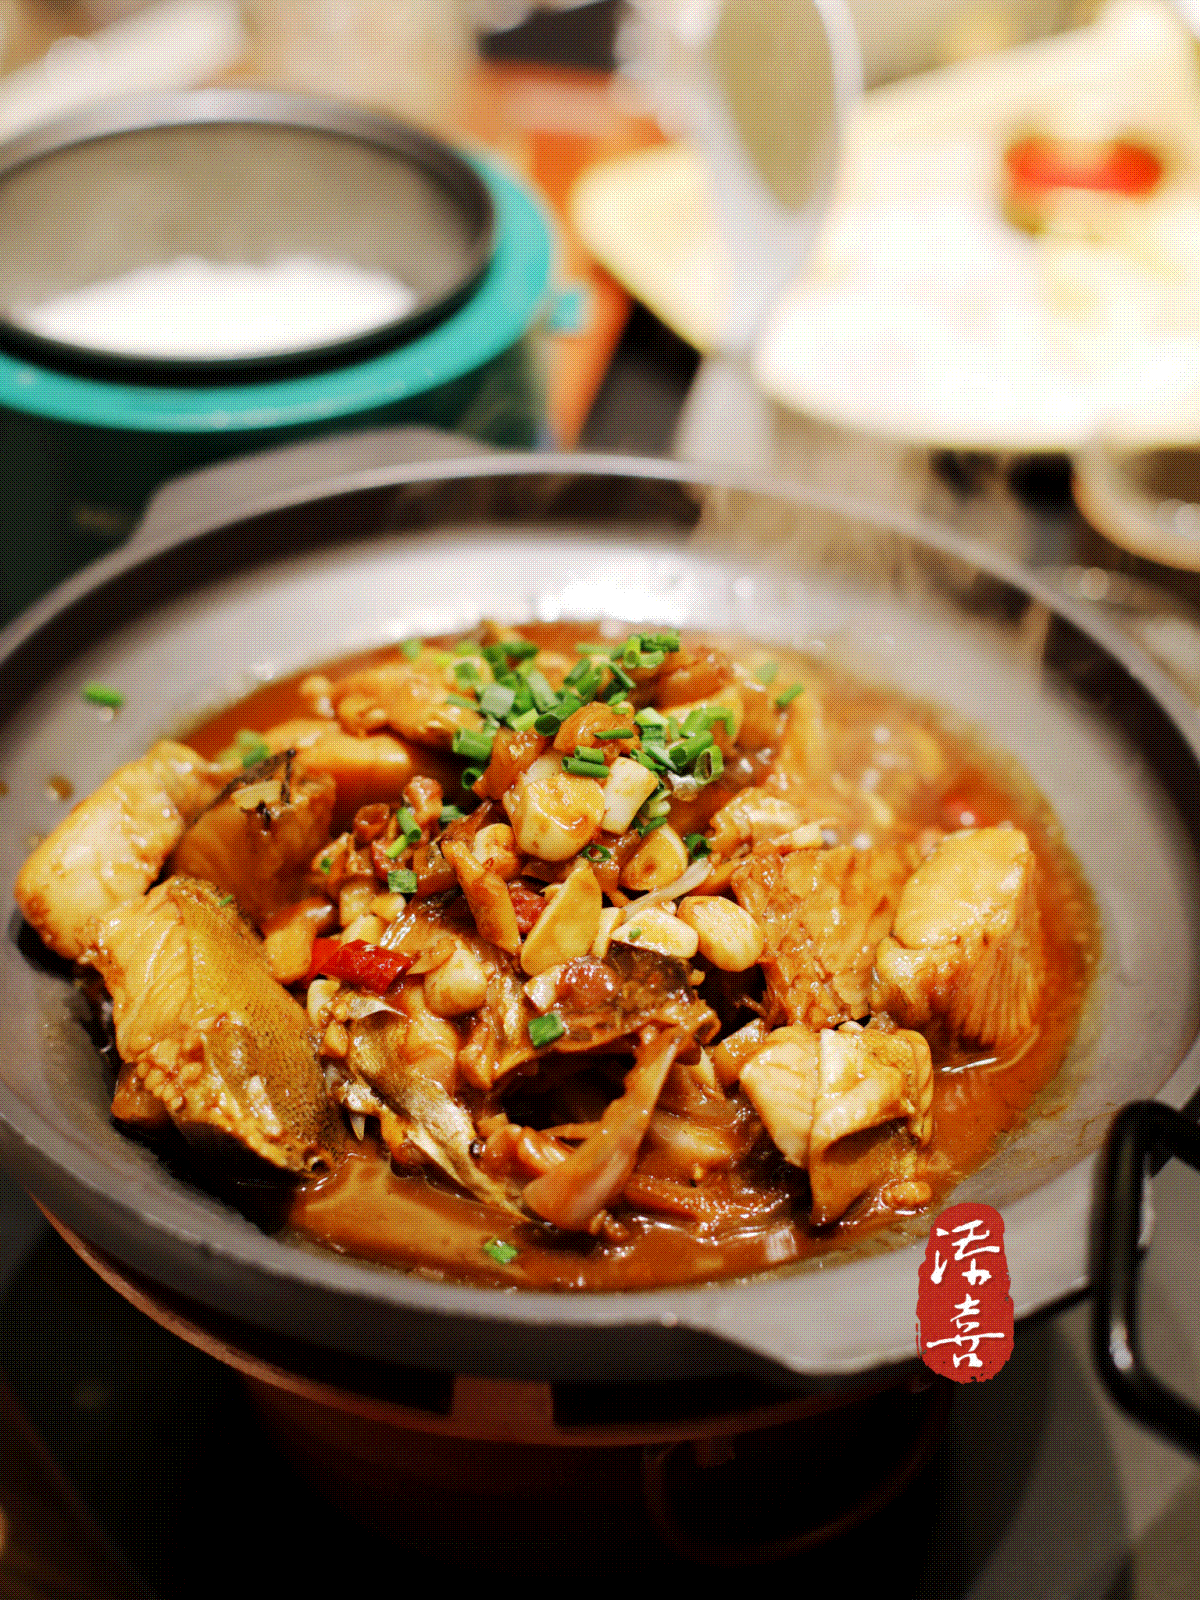 来自鱼米之乡的富庶滋味——大鱼徽州升级版家宴餐厅首驻杭州金沙印象城